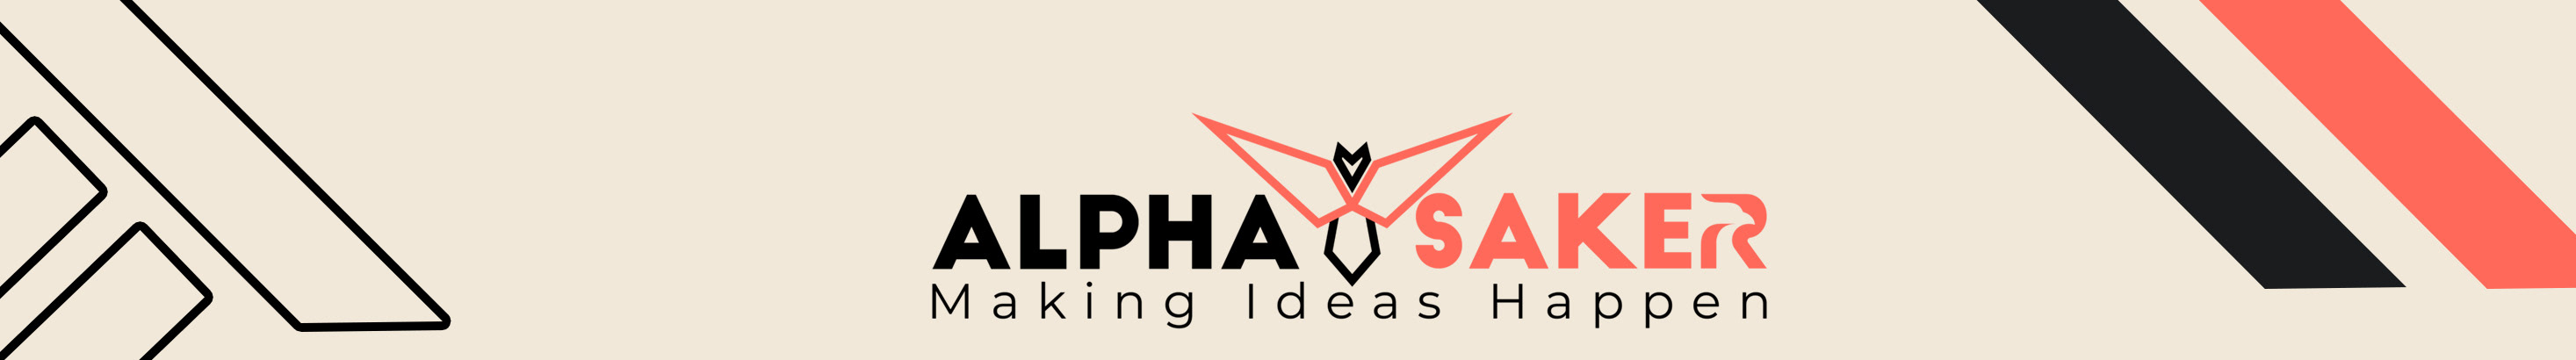 Alpha Saker Technologies's profile banner